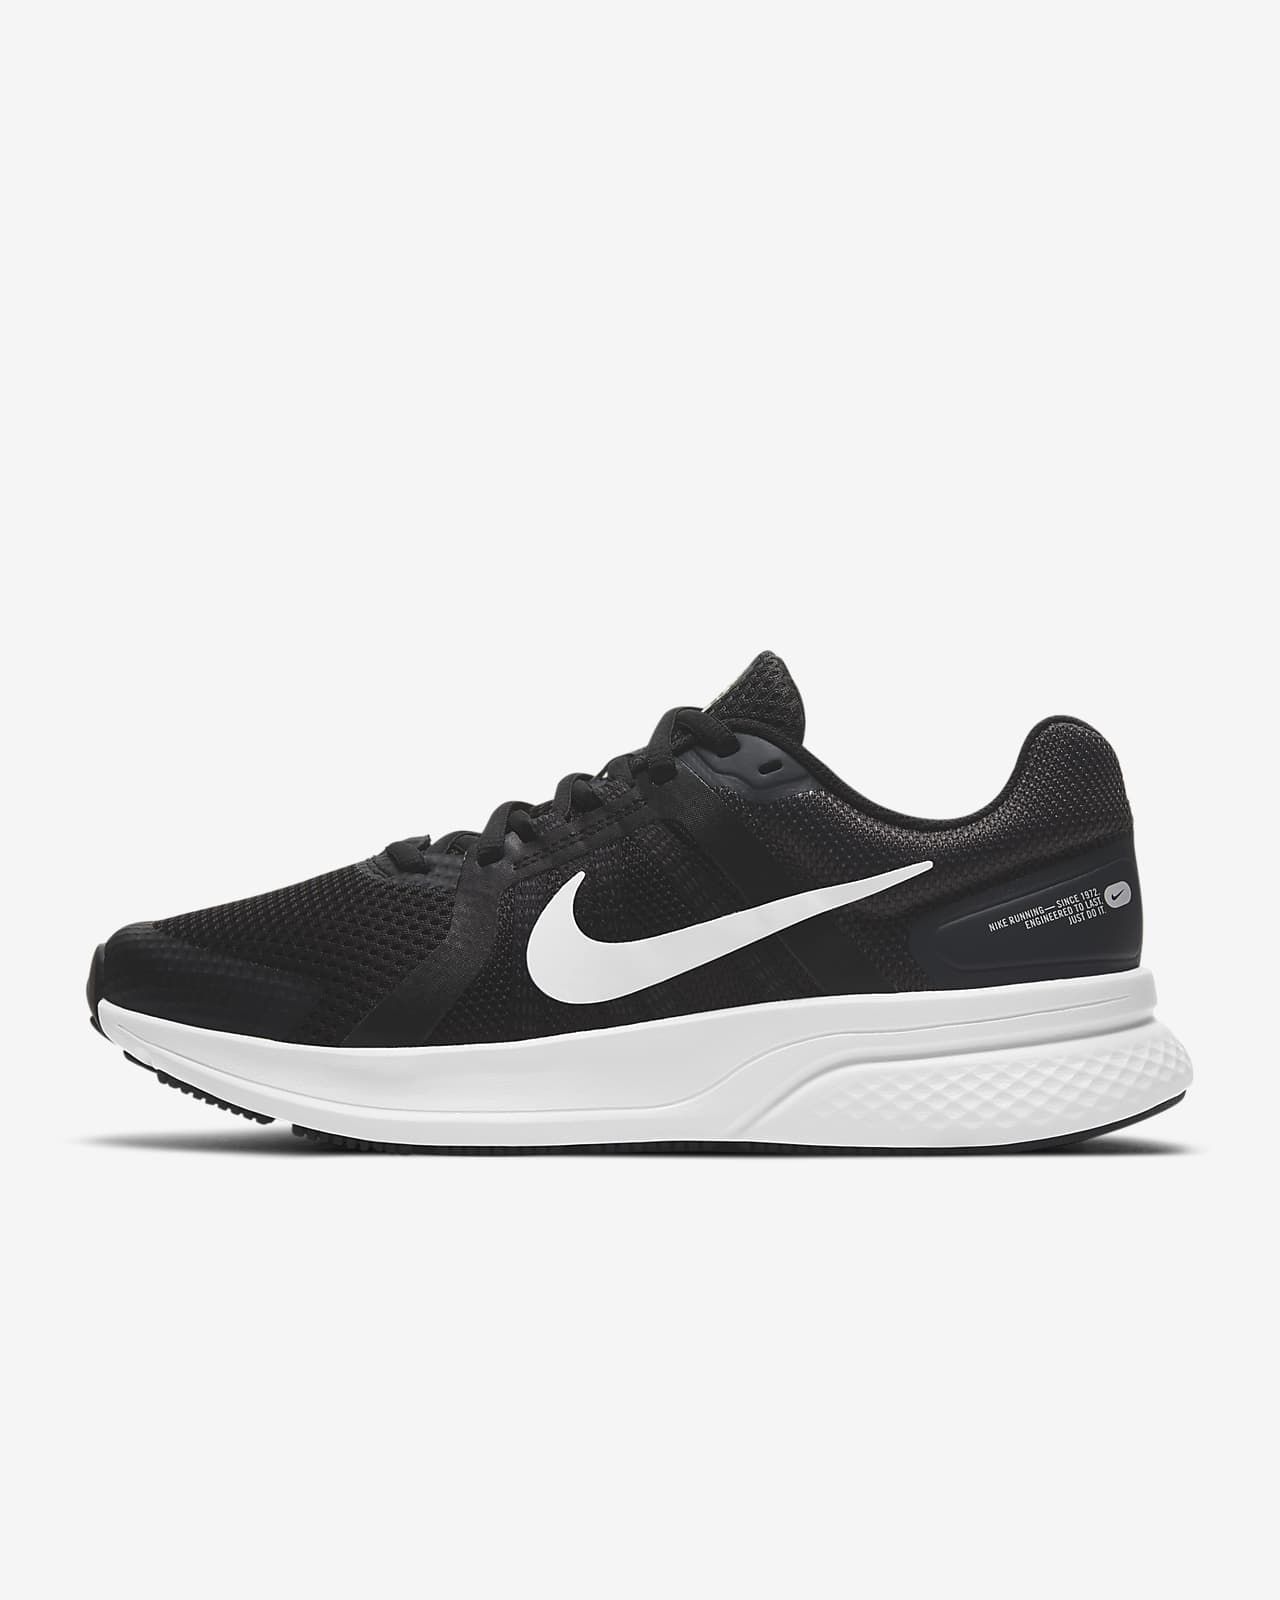 Nike Run Swift 2Women's Road Running Shoes$70 | Nike (US)